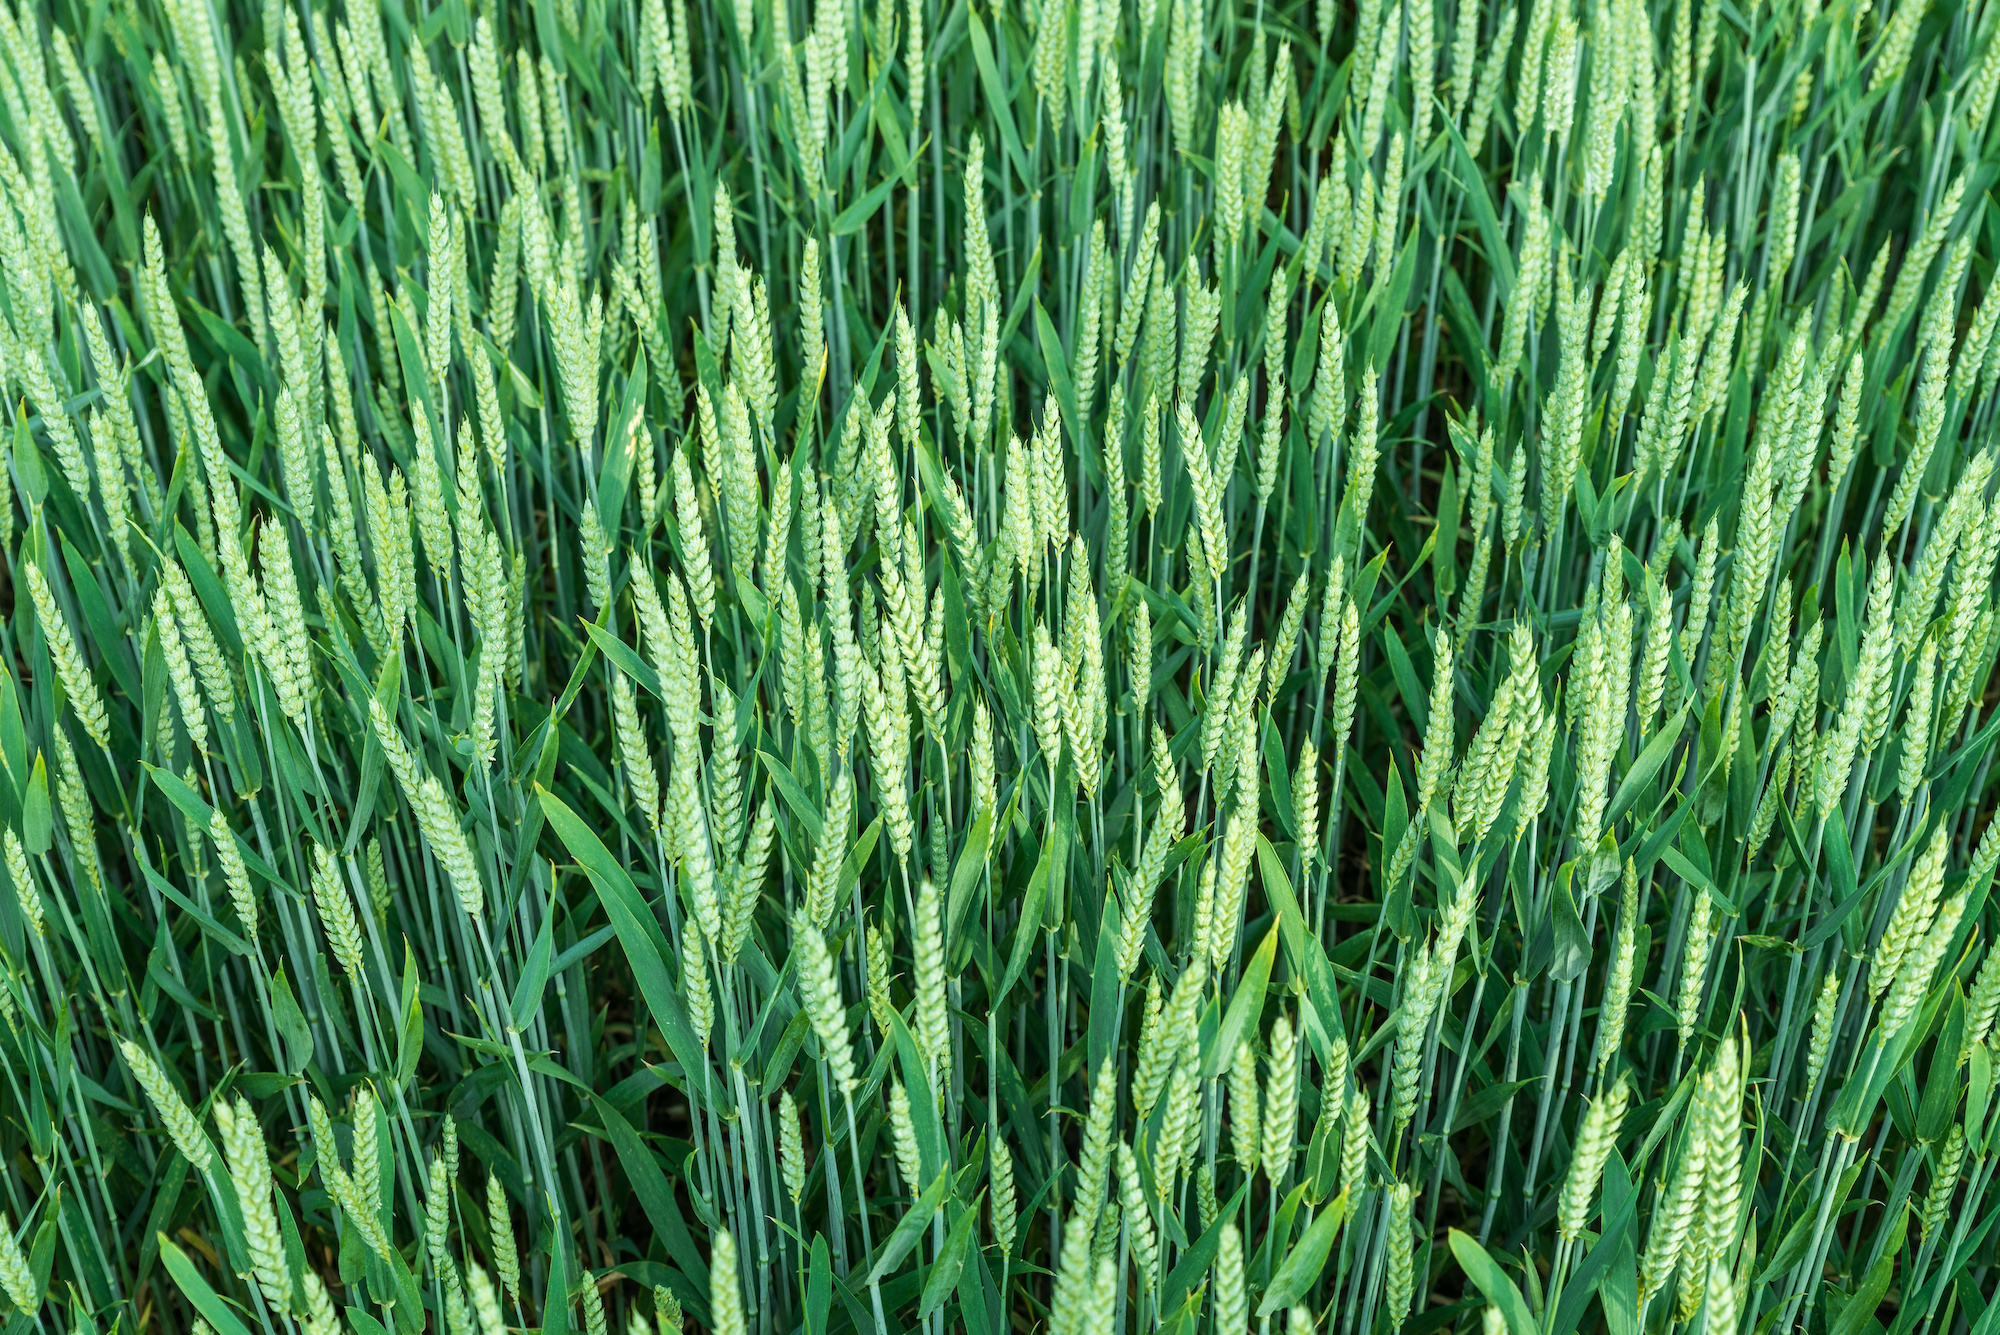 Die komplexe Genetik des Weizens verhinderte bisher die Züchtung resistenter Sorten. (Bild: Adobe Stock)